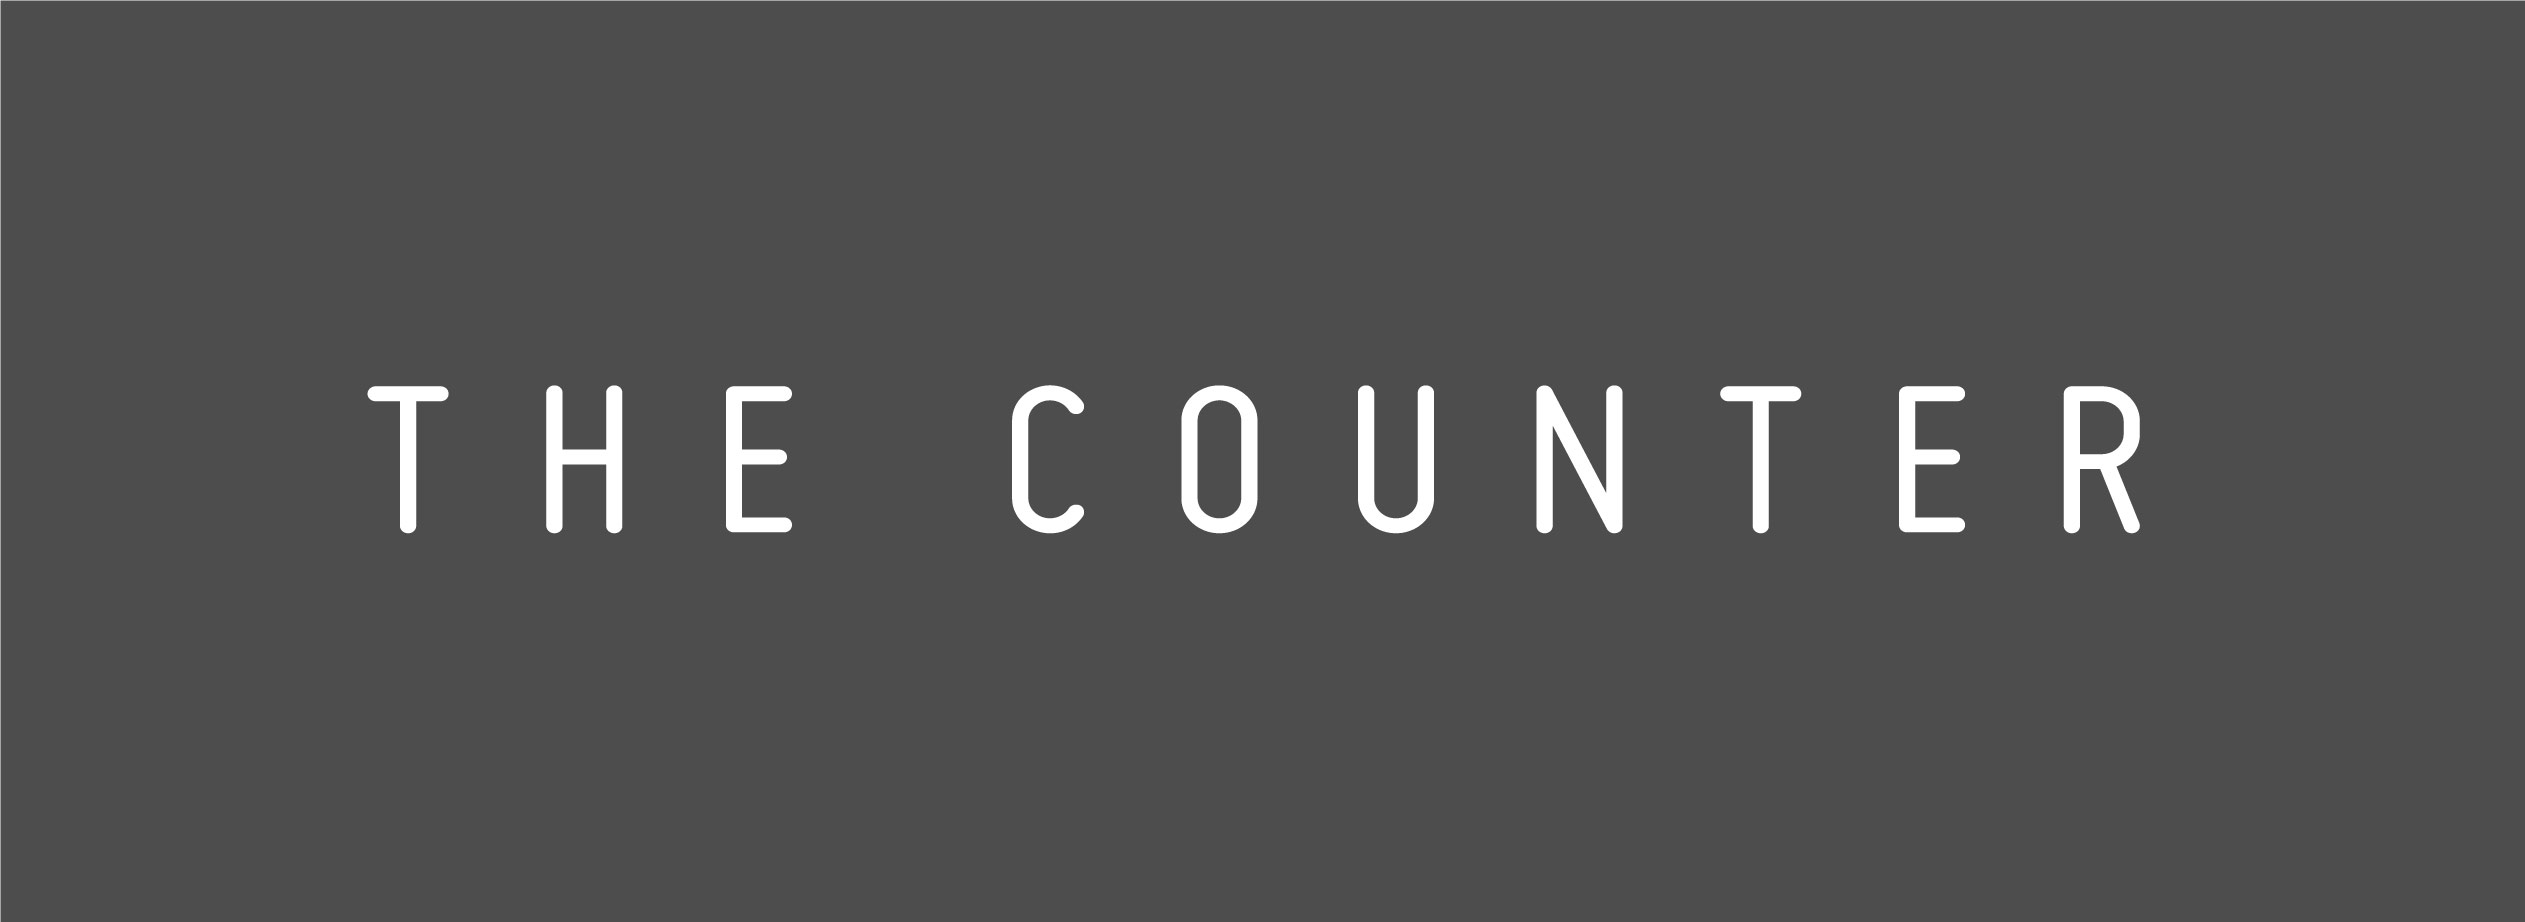 The Counter logo